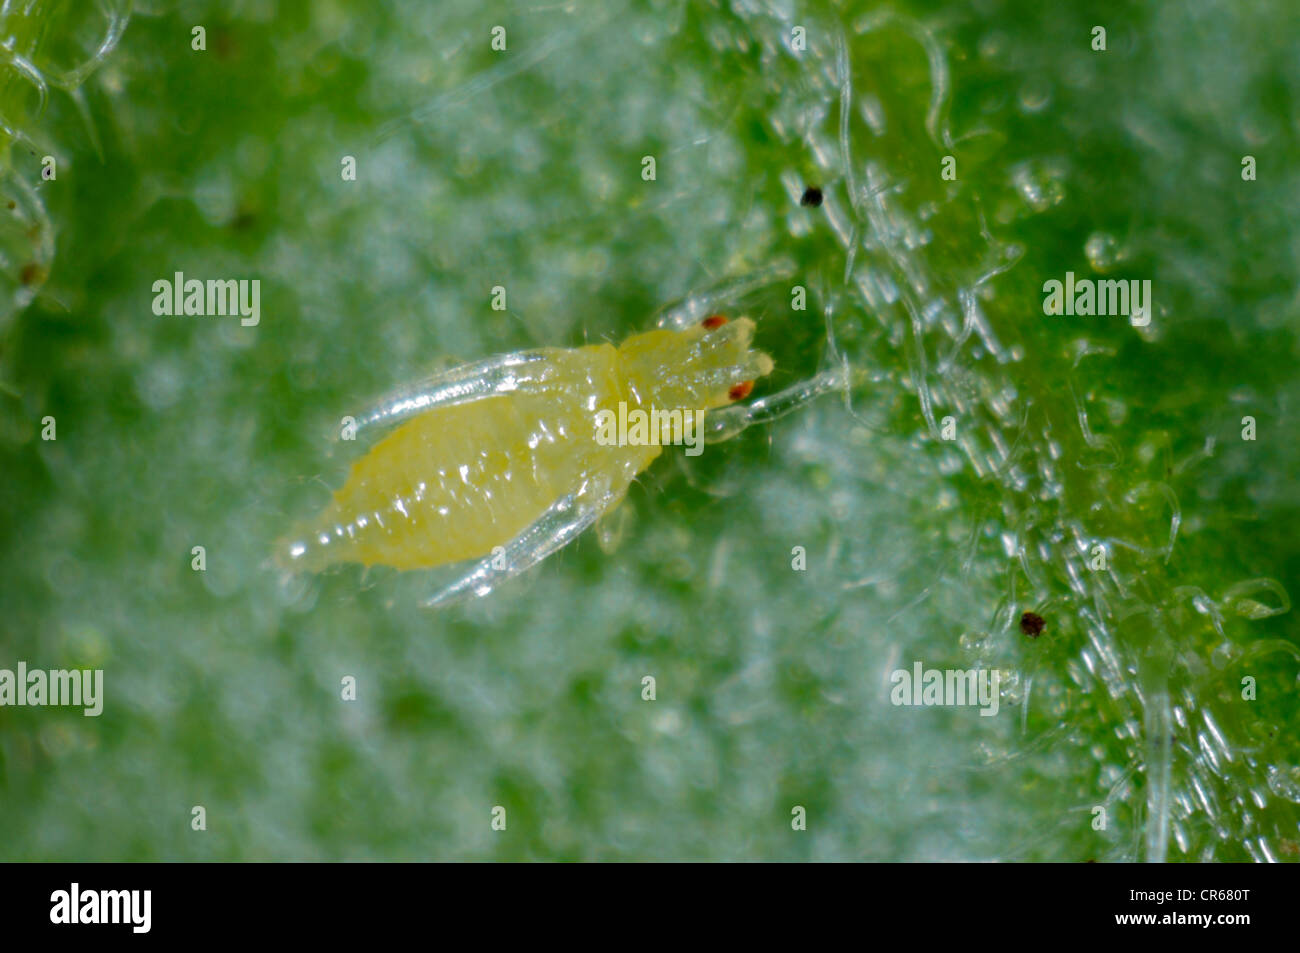 Western flower thrip (Frankliniella occidentalis) pre-pupa on a leaf Stock Photo